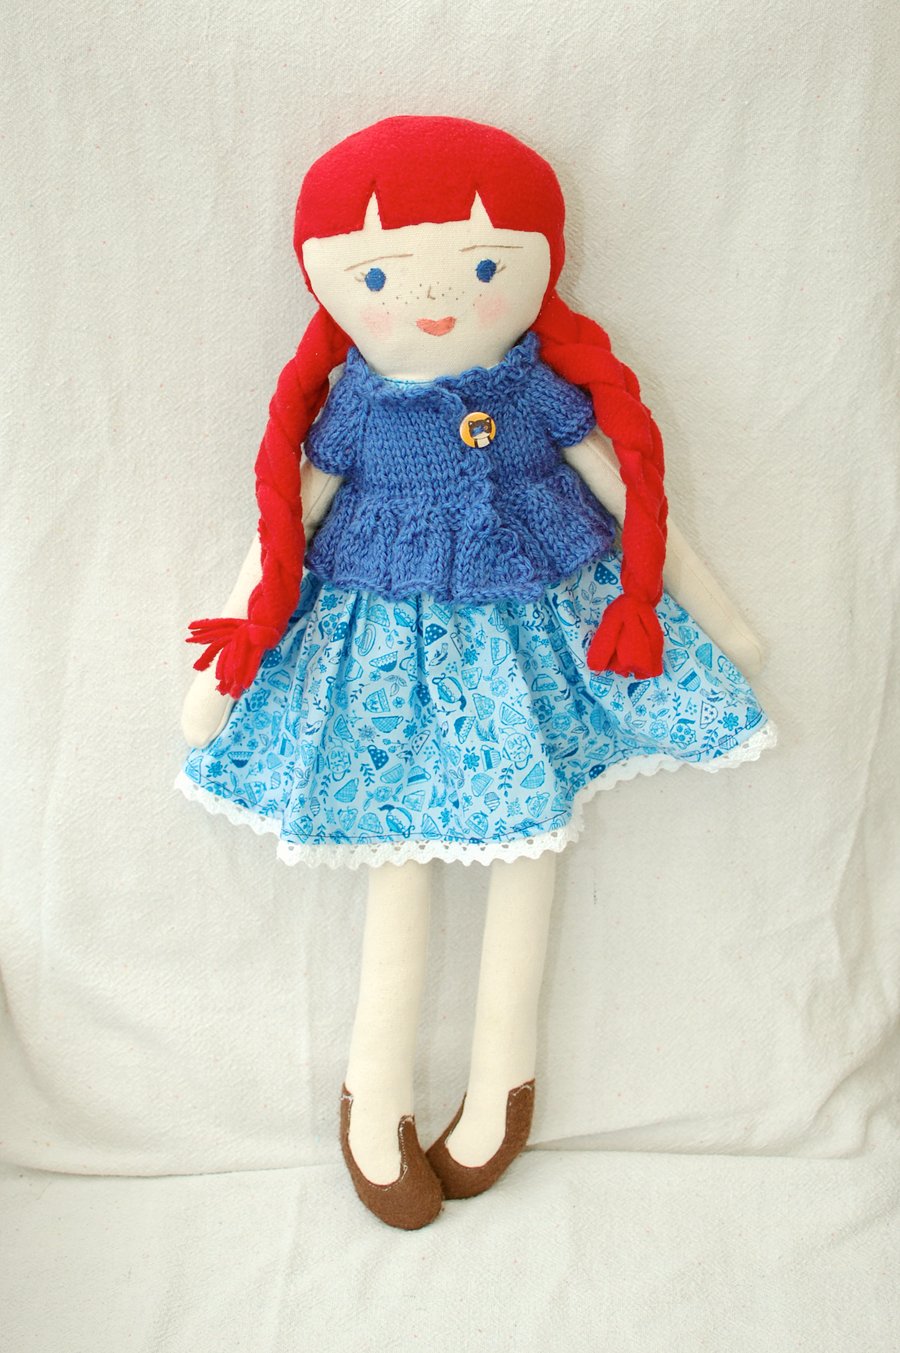 Handmade doll, Rag doll, Cloth doll, Birthday gift, Gift idea, Nursery décor